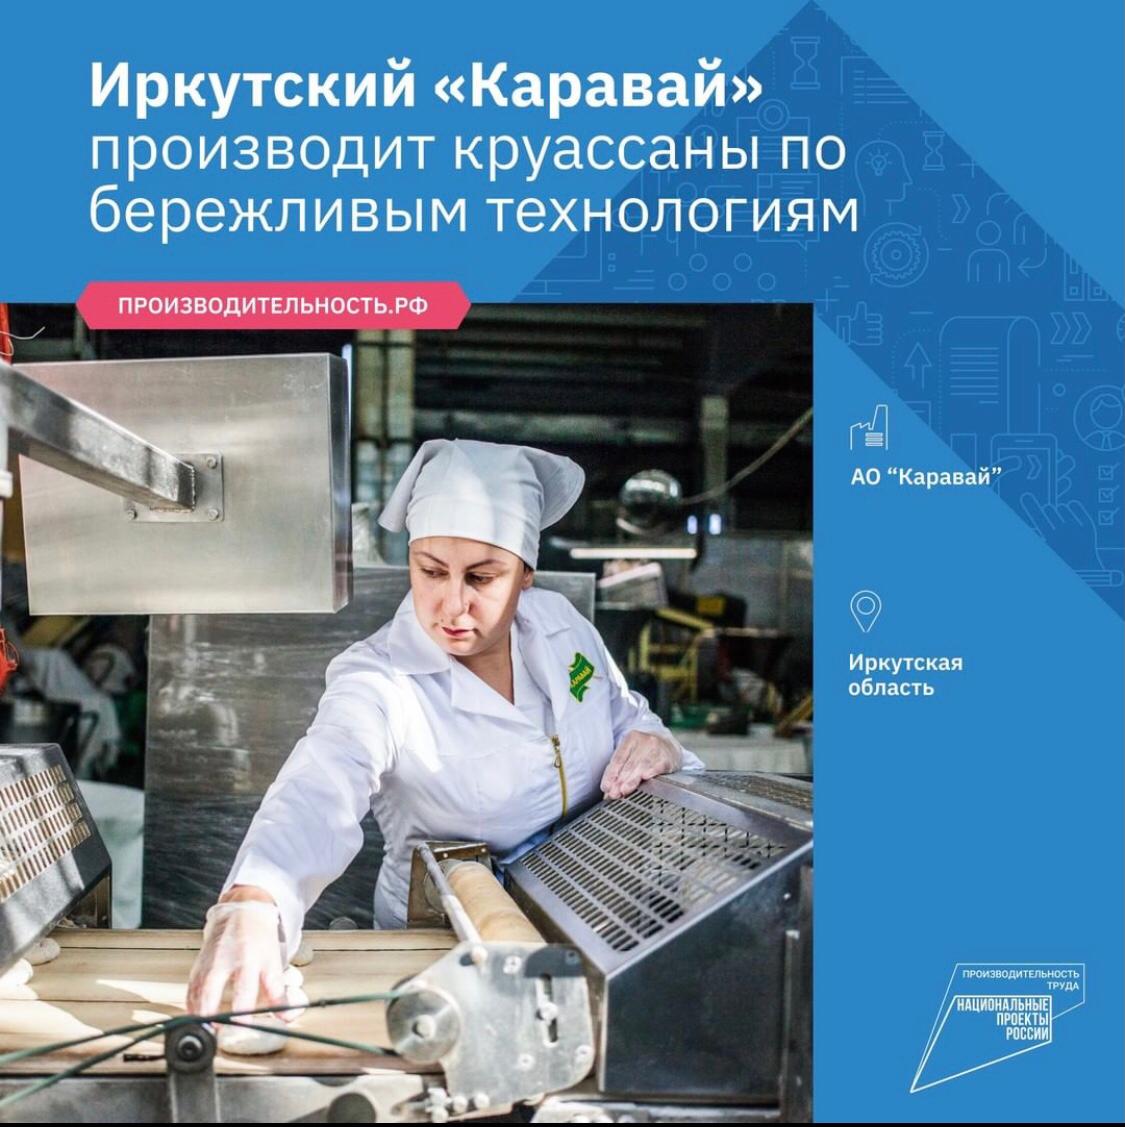 Эксперты Федерального центра компетенций помогают Иркутскому «Караваю» выпускать вкусную продукцию.